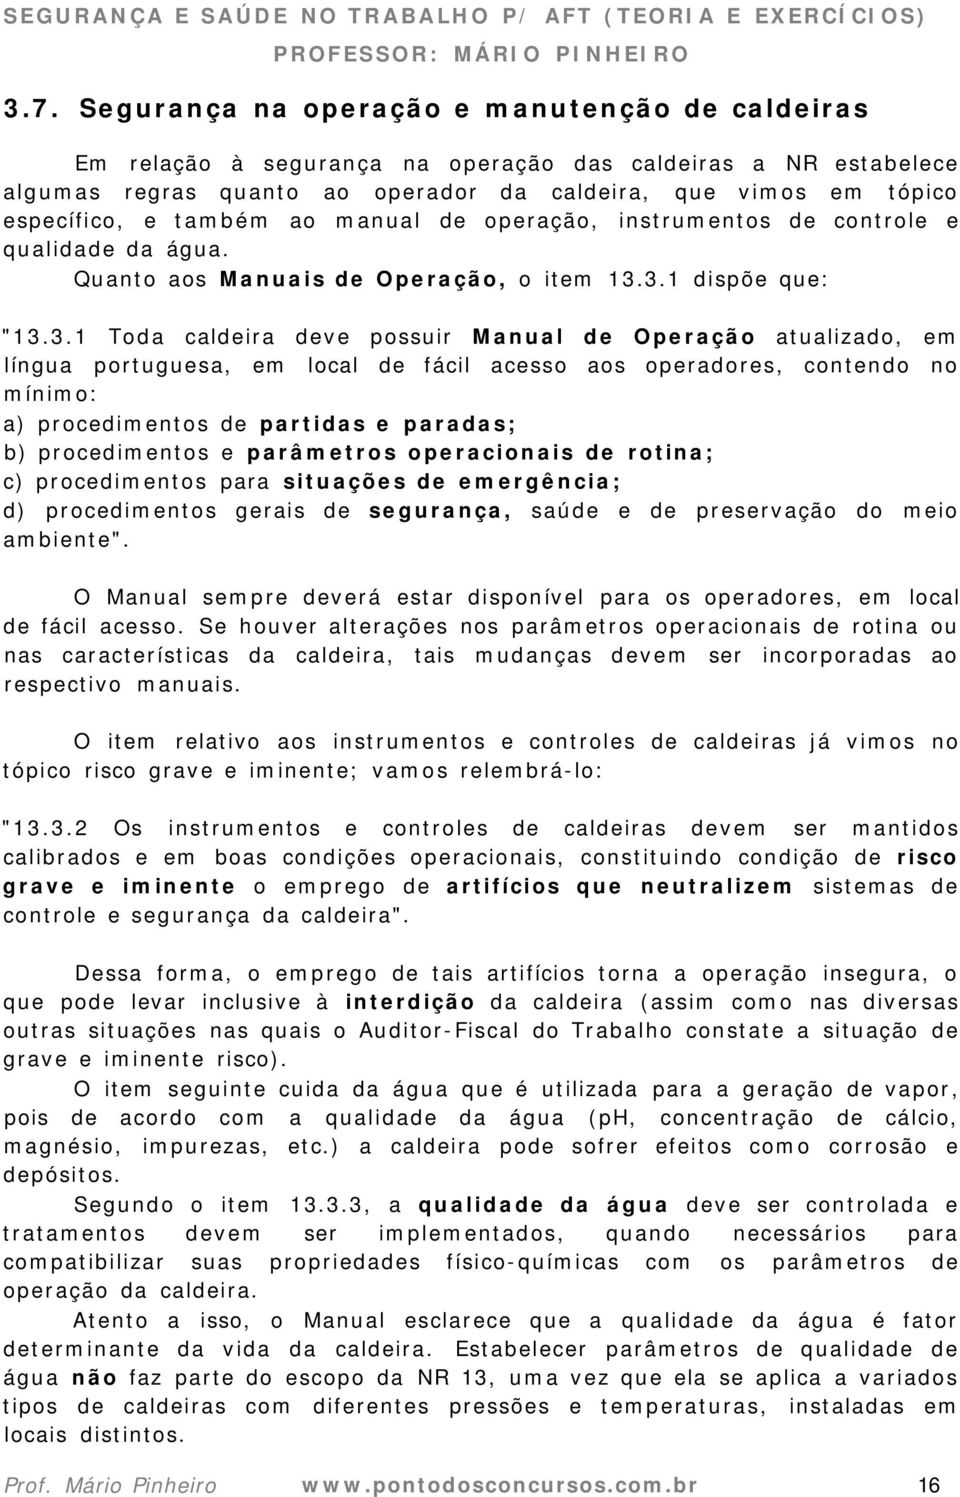 3.1 dispõe que: "13.3.1 Toda caldeira deve possuir Manual de Operação atualizado, em língua portuguesa, em local de fácil acesso aos operadores, contendo no mínimo: a) procedimentos de partidas e